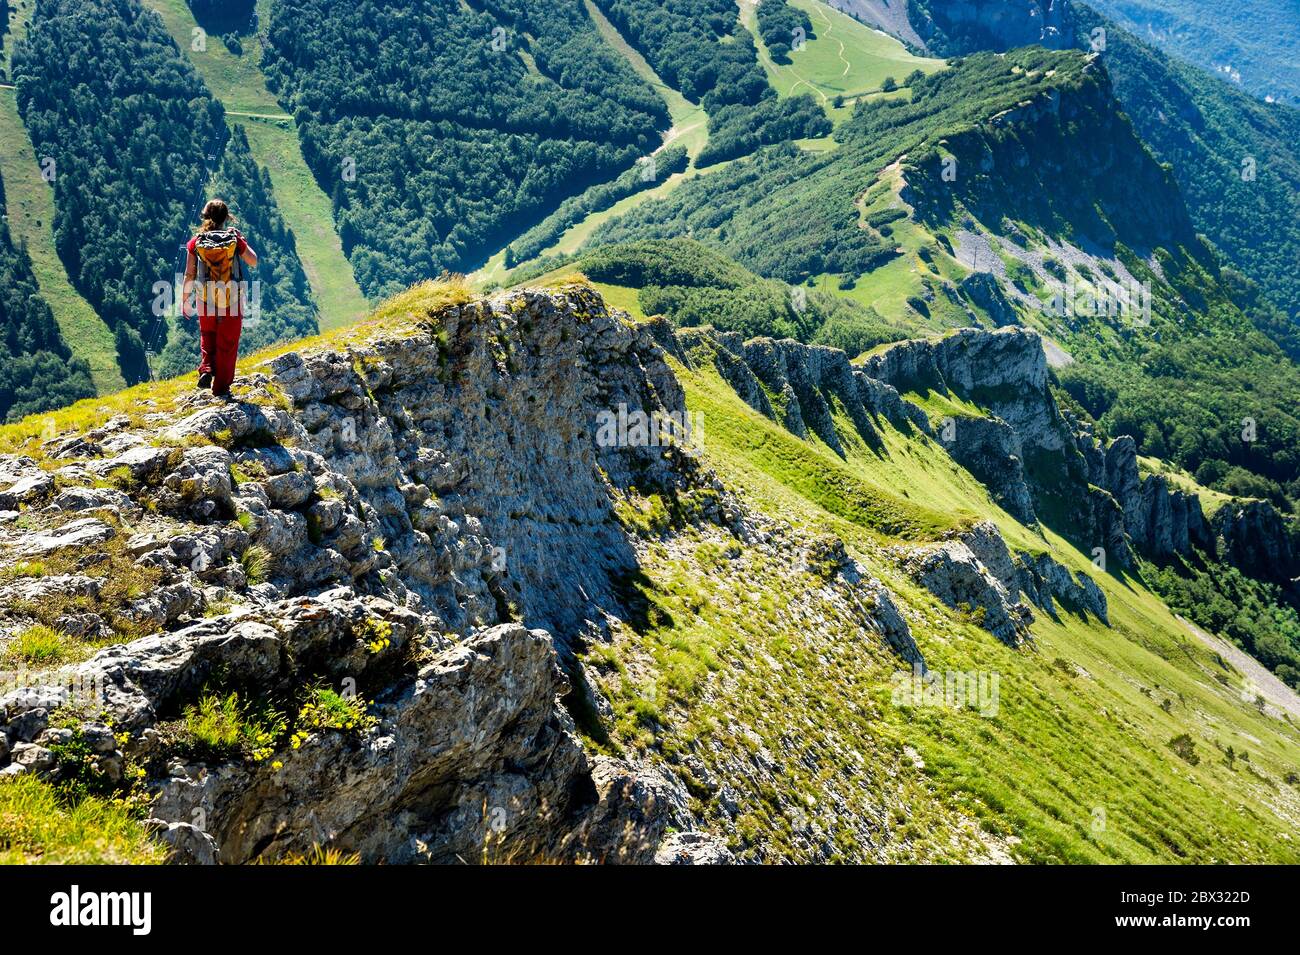 France, Drôme (26), Vercors Regional Nature Park, Rousset-en-Vercors, Montagne de Nève, Hiker descending on the southern ridge towards the Col de Rousset (1249m) from the But de Nève (1656m) Stock Photo